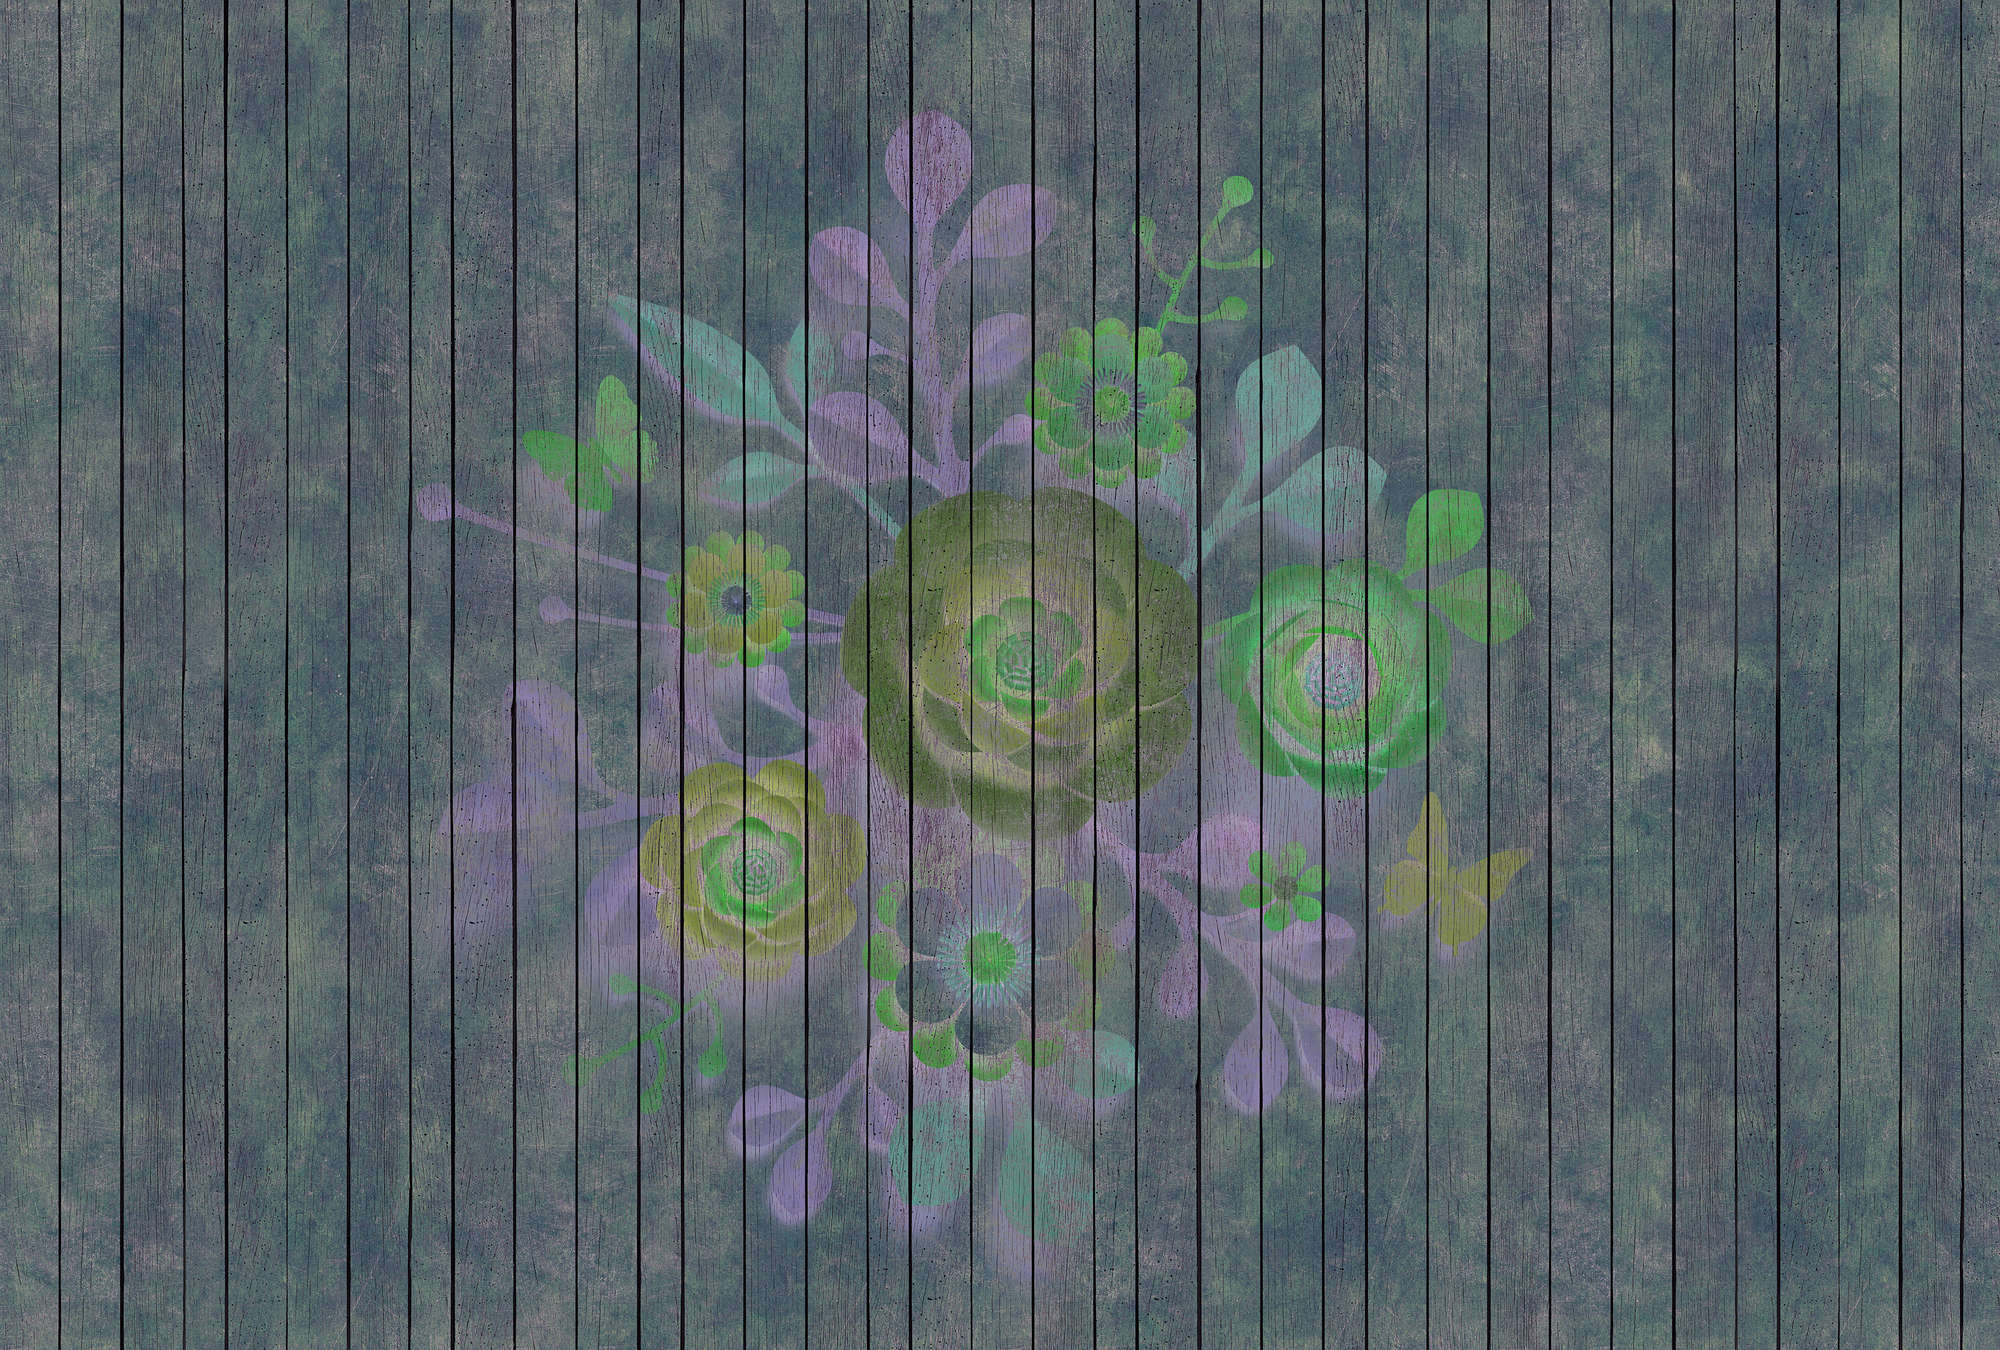             Spray Bouquet 2 - Fototapete in Holzpaneele Struktur mit Blumen auf Bretterwand – Blau, Grün | Premium Glattvlies
        